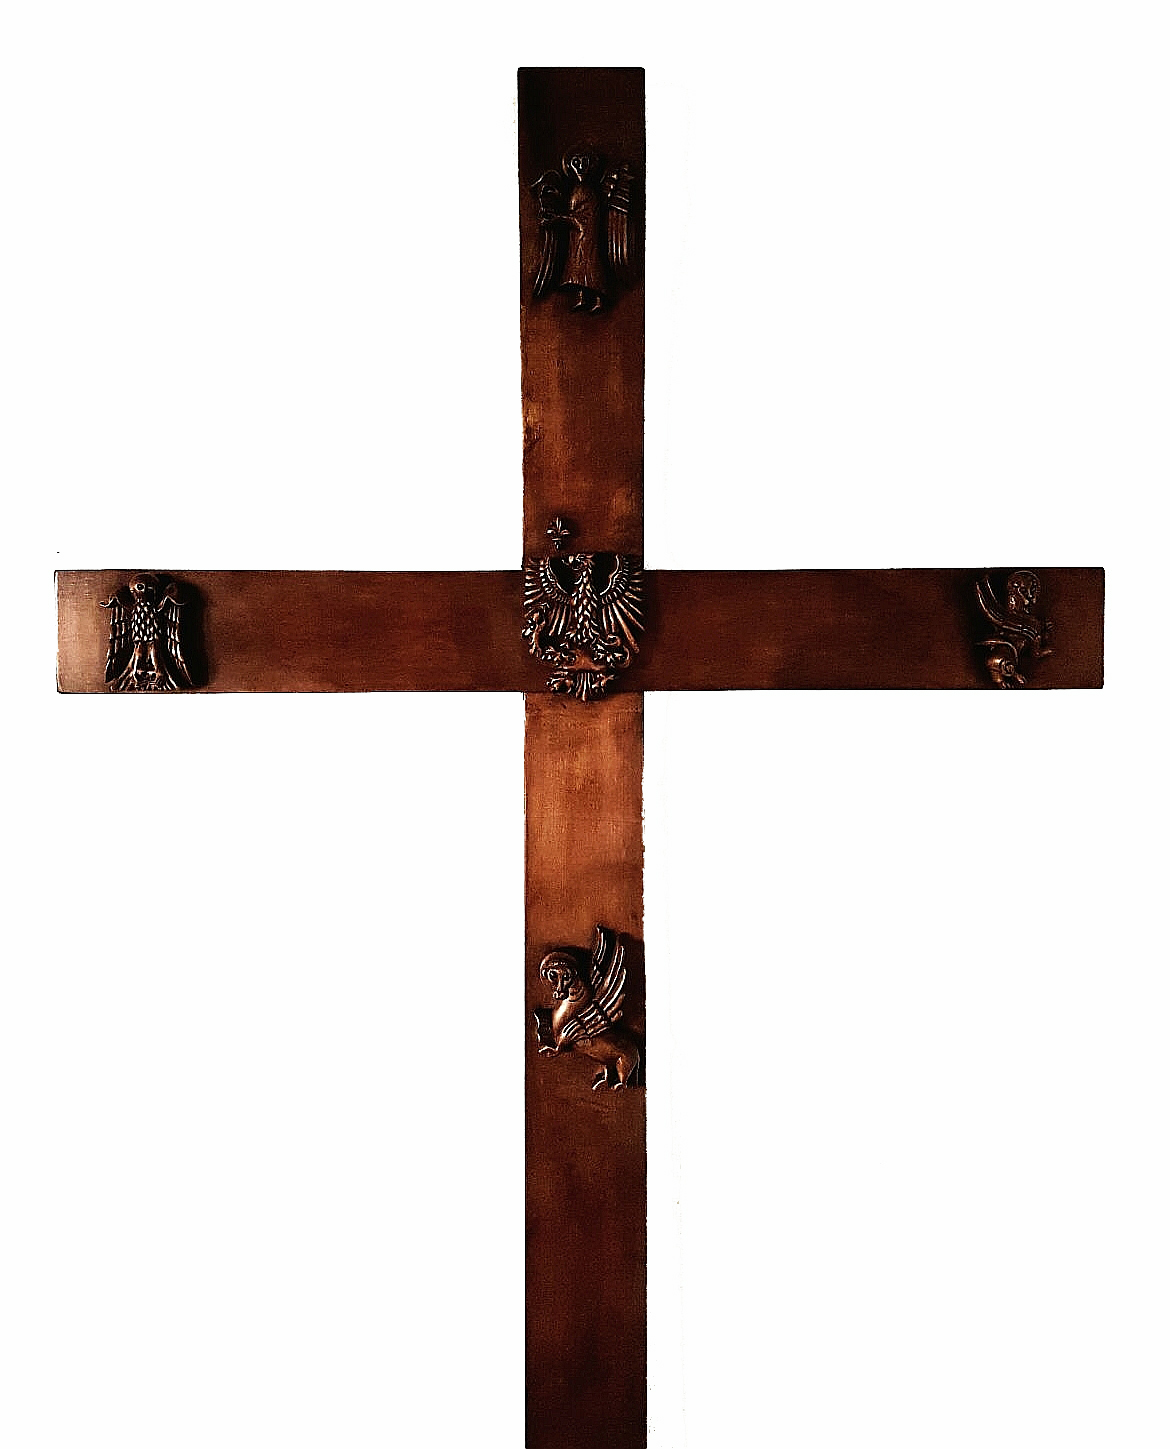 Croce di Parte Guelfa small